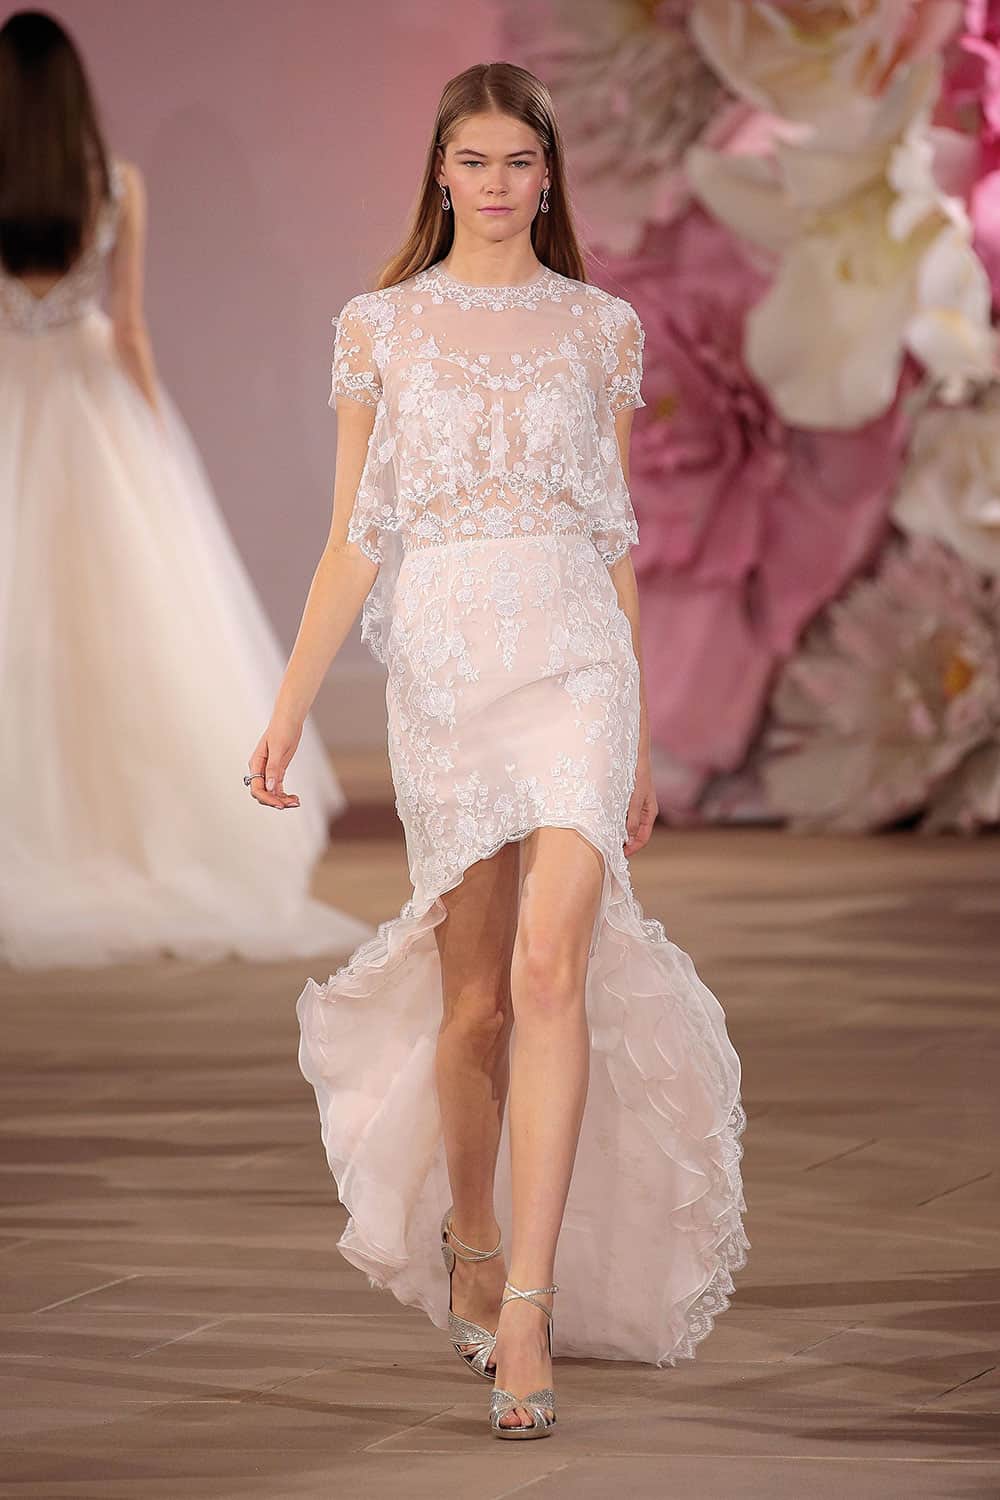 Pink wedding dresses: short at front, long at back rose skirt with sheer embelished bodice.